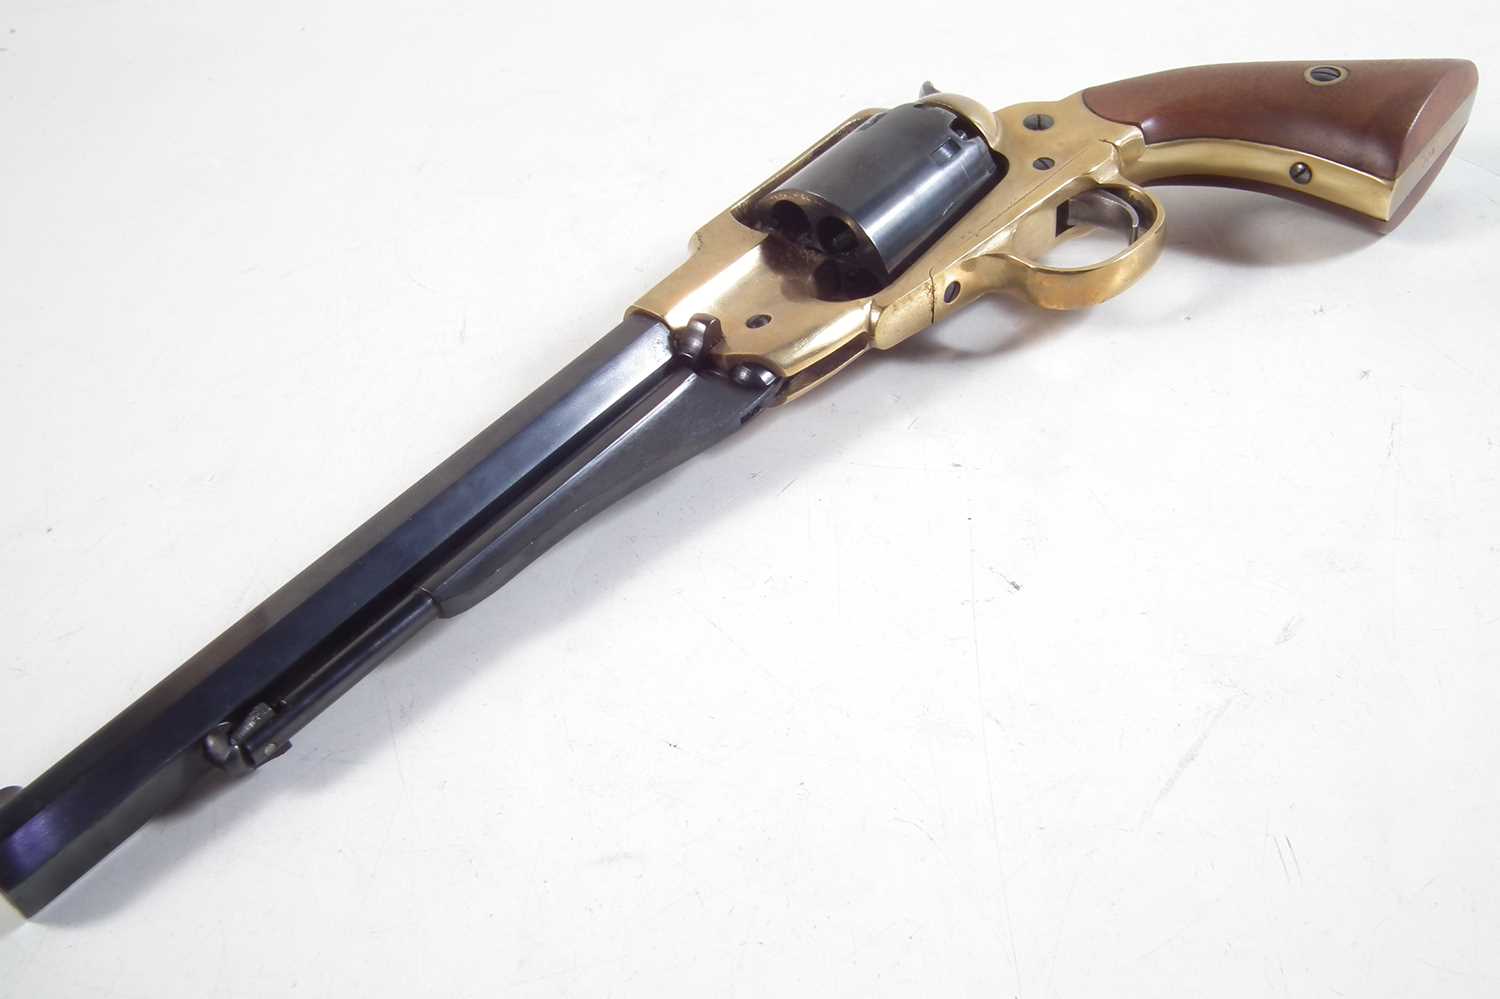 Pietta Inert replica of a Remington 1858 .44 calibre revolver, - Image 5 of 5